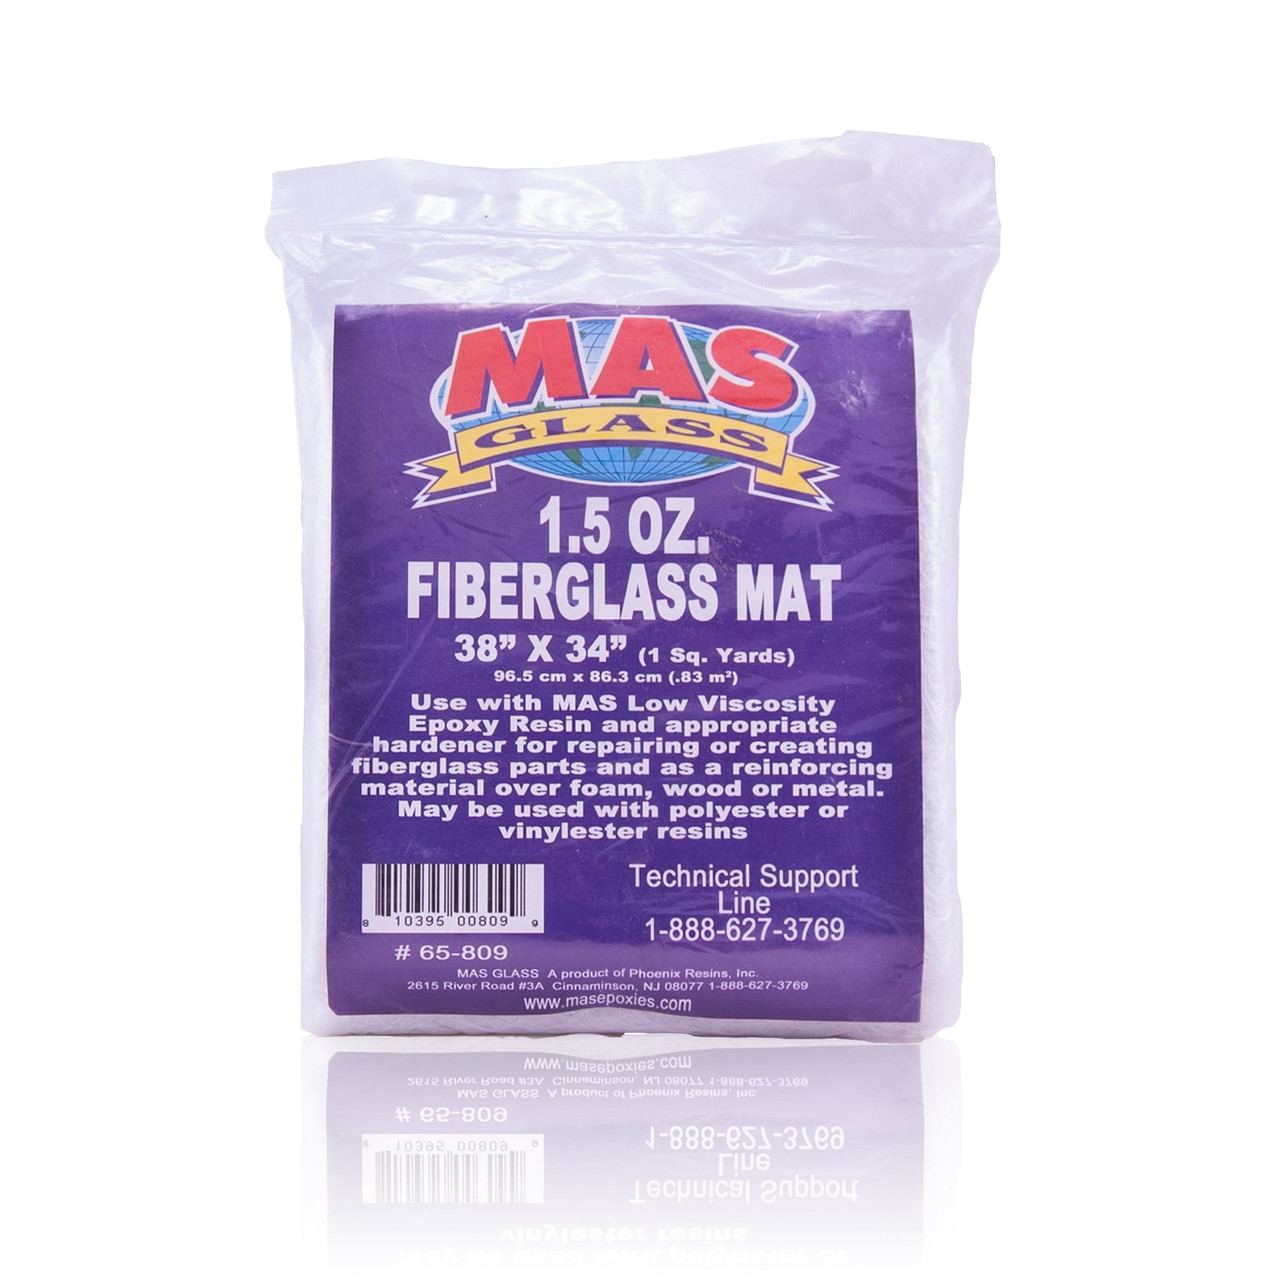 1.5 oz. Fiberglass Mat